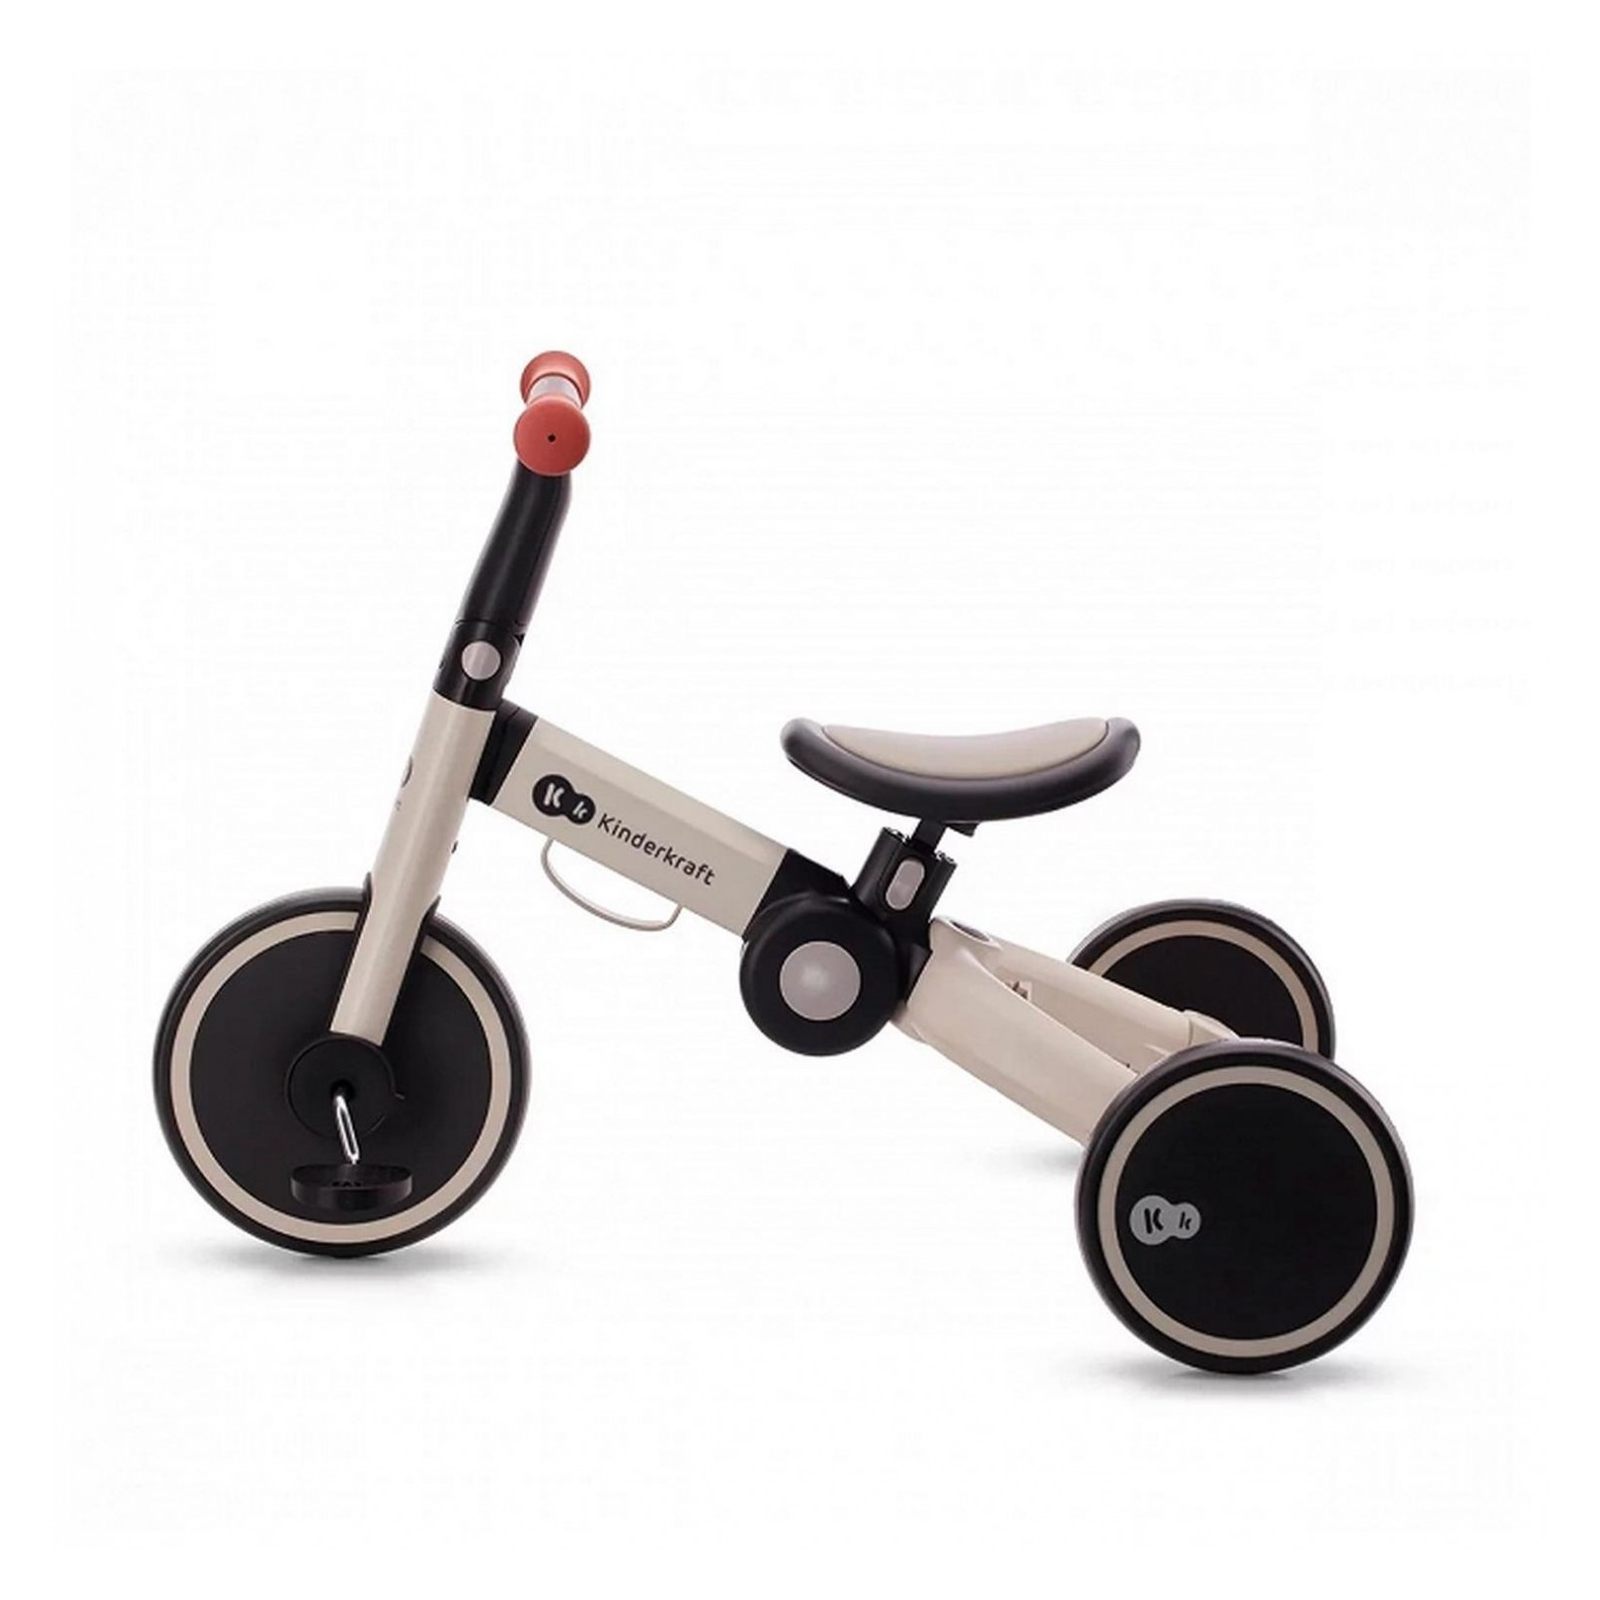 Детский велосипед Kinderkraft 3 в 1 4TRIKE szary Grey (KR4TRI22GRY0000)